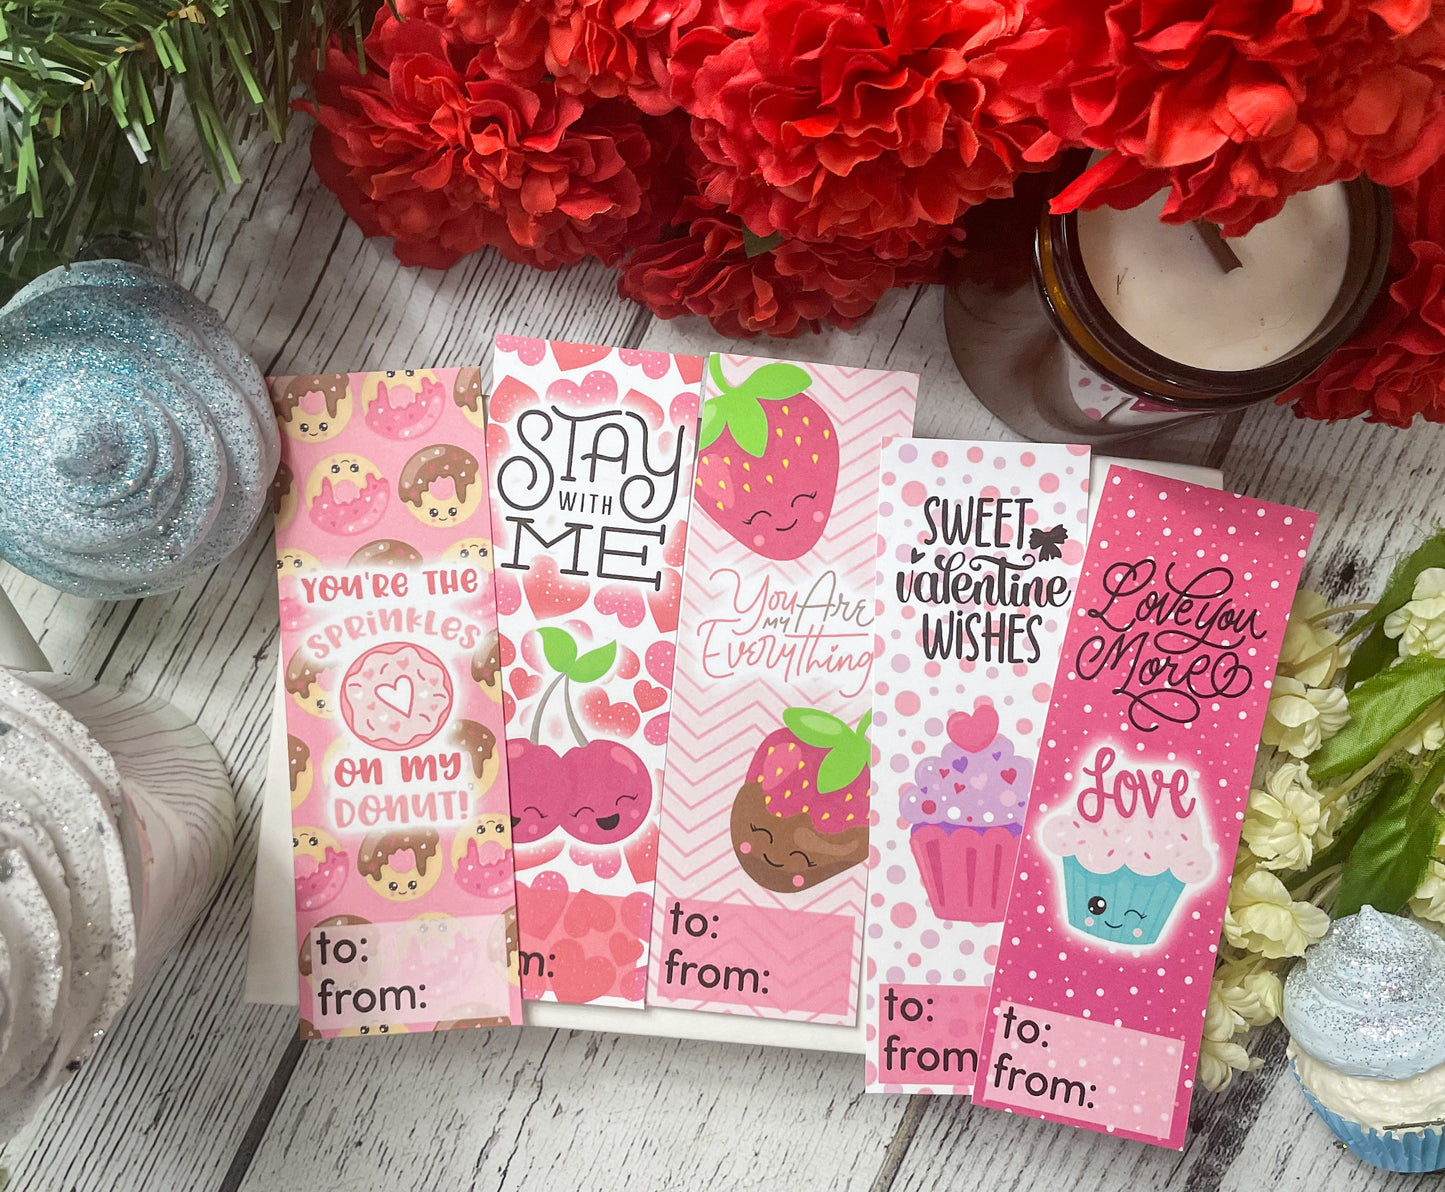 Cutie Food Valentine Cards | Valentine Bookmarks